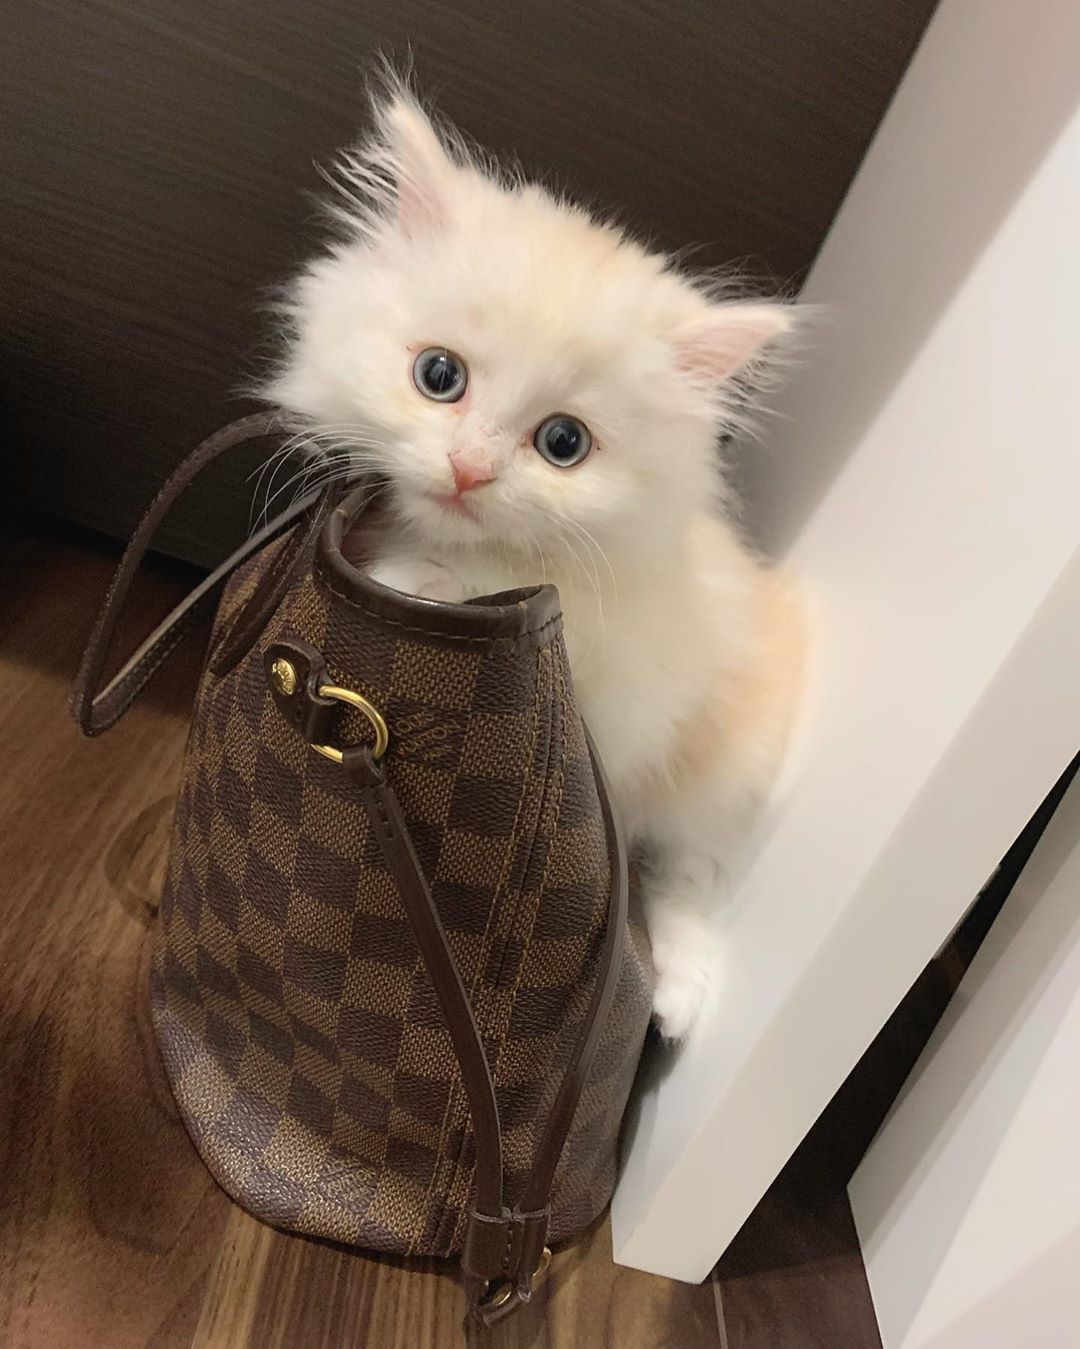 田中れいな 今日のシンバ ねこ ネコ 猫 かわいい シンバ 大好き 癒し Cat Photo Instagram Instagramjapan Moe Zine